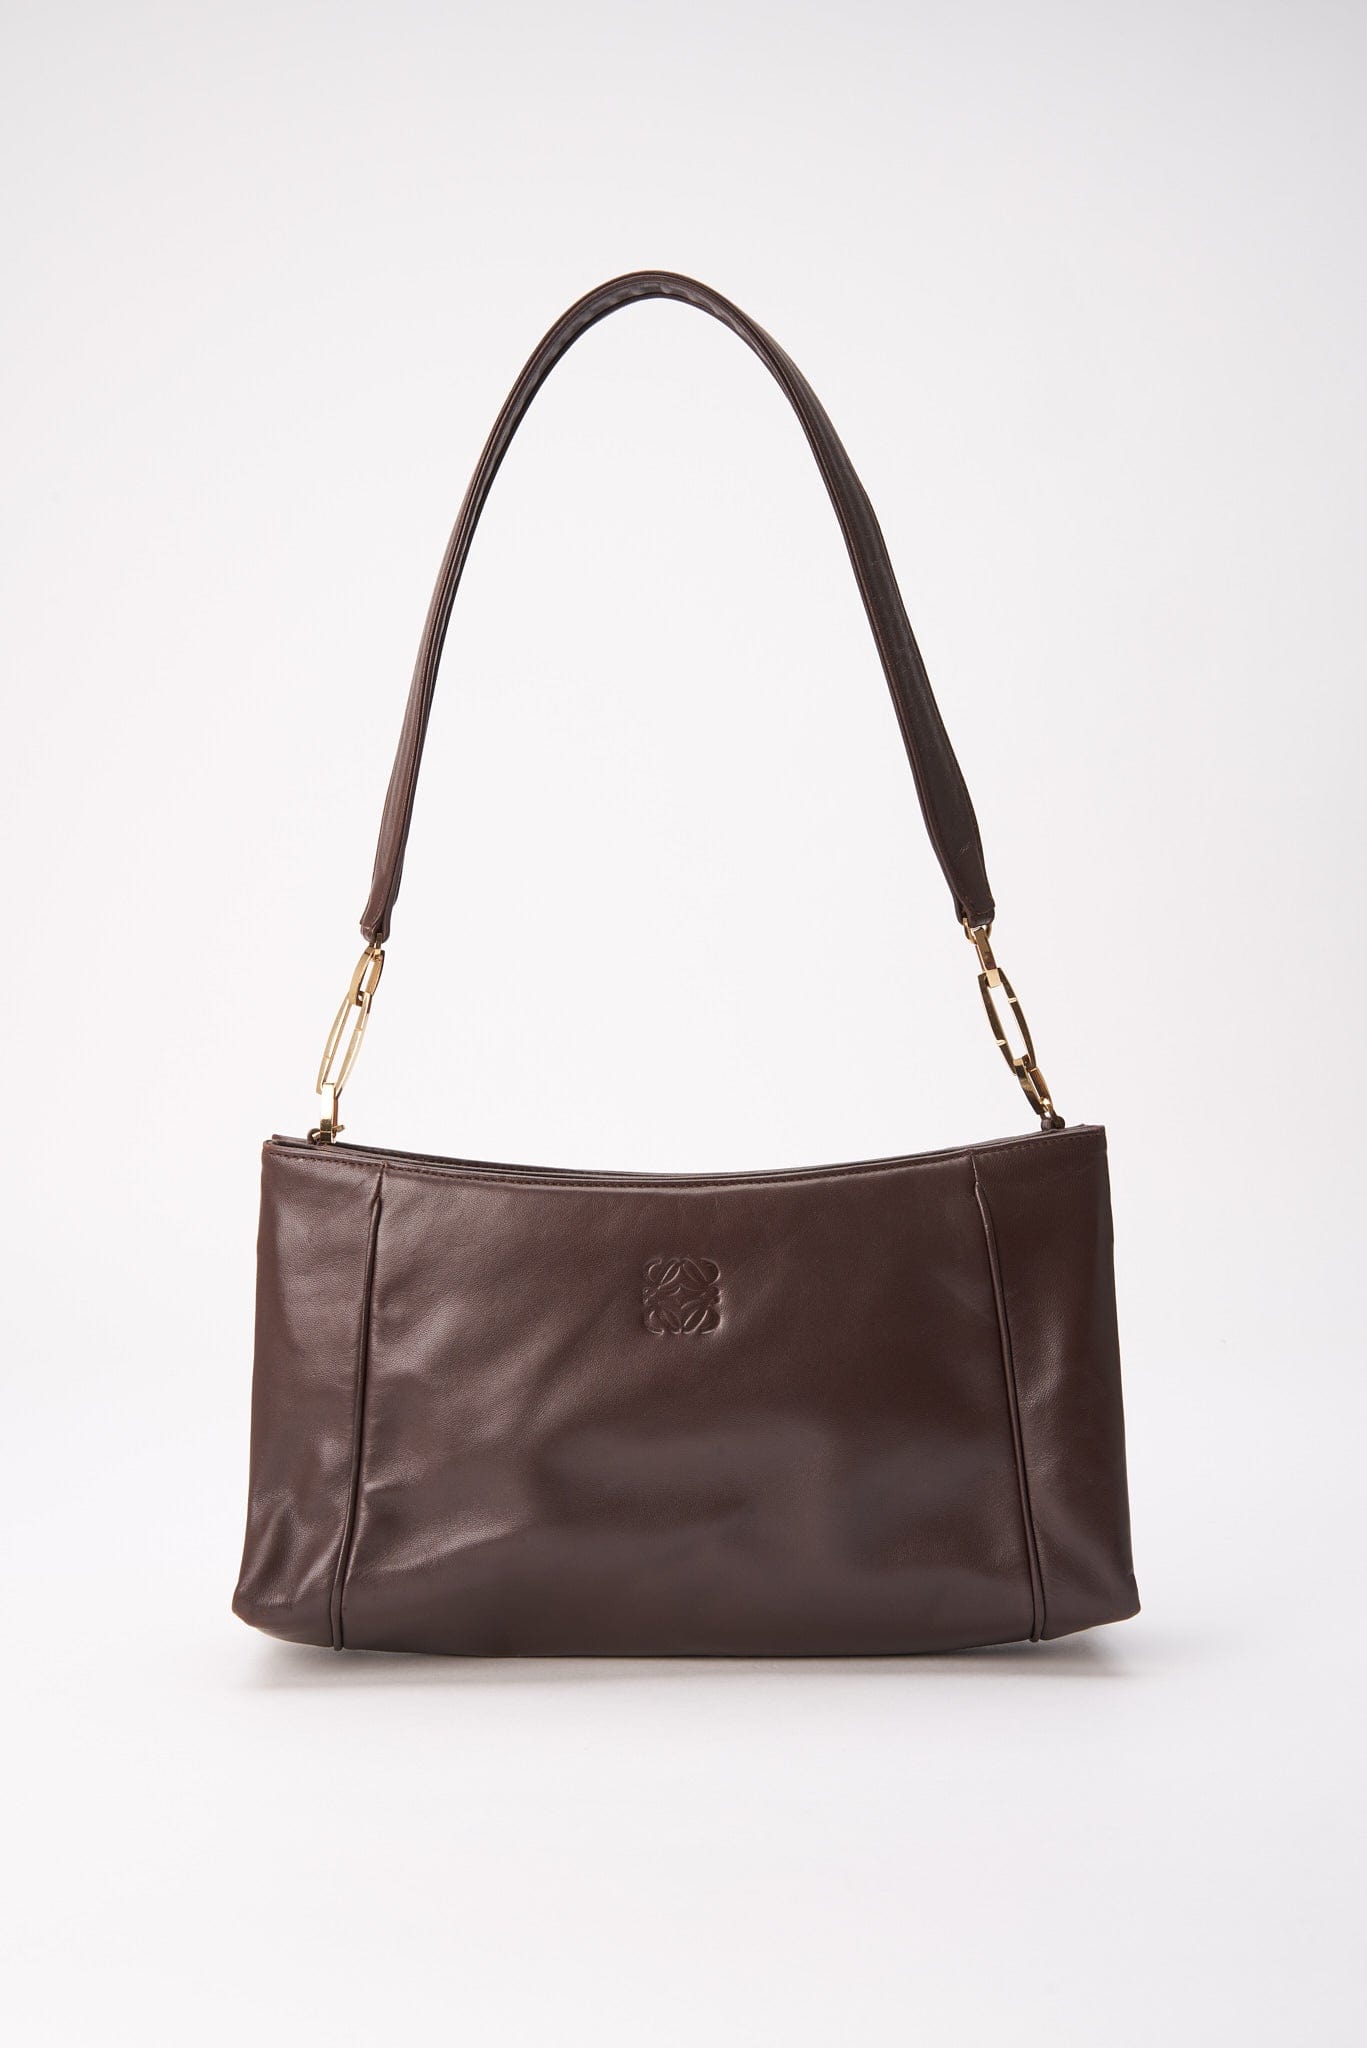 Vintage Loewe Brown Leather Shoulder Bag